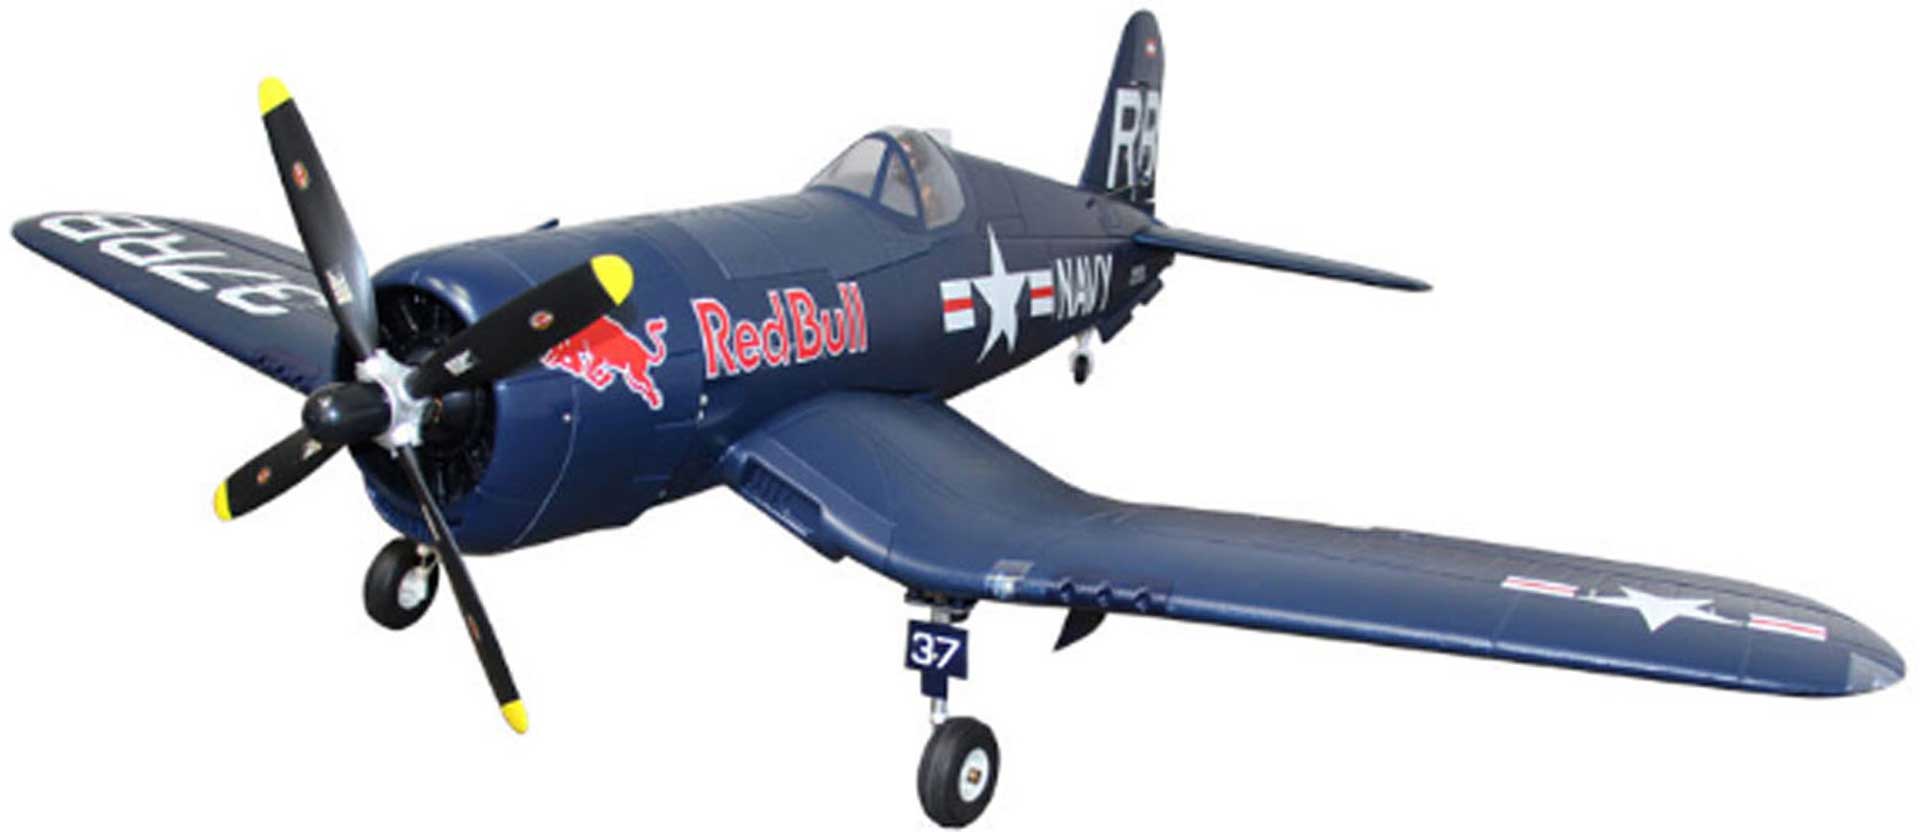 STAUFENBIEL Red Bull F4U-4 Corsair PNP